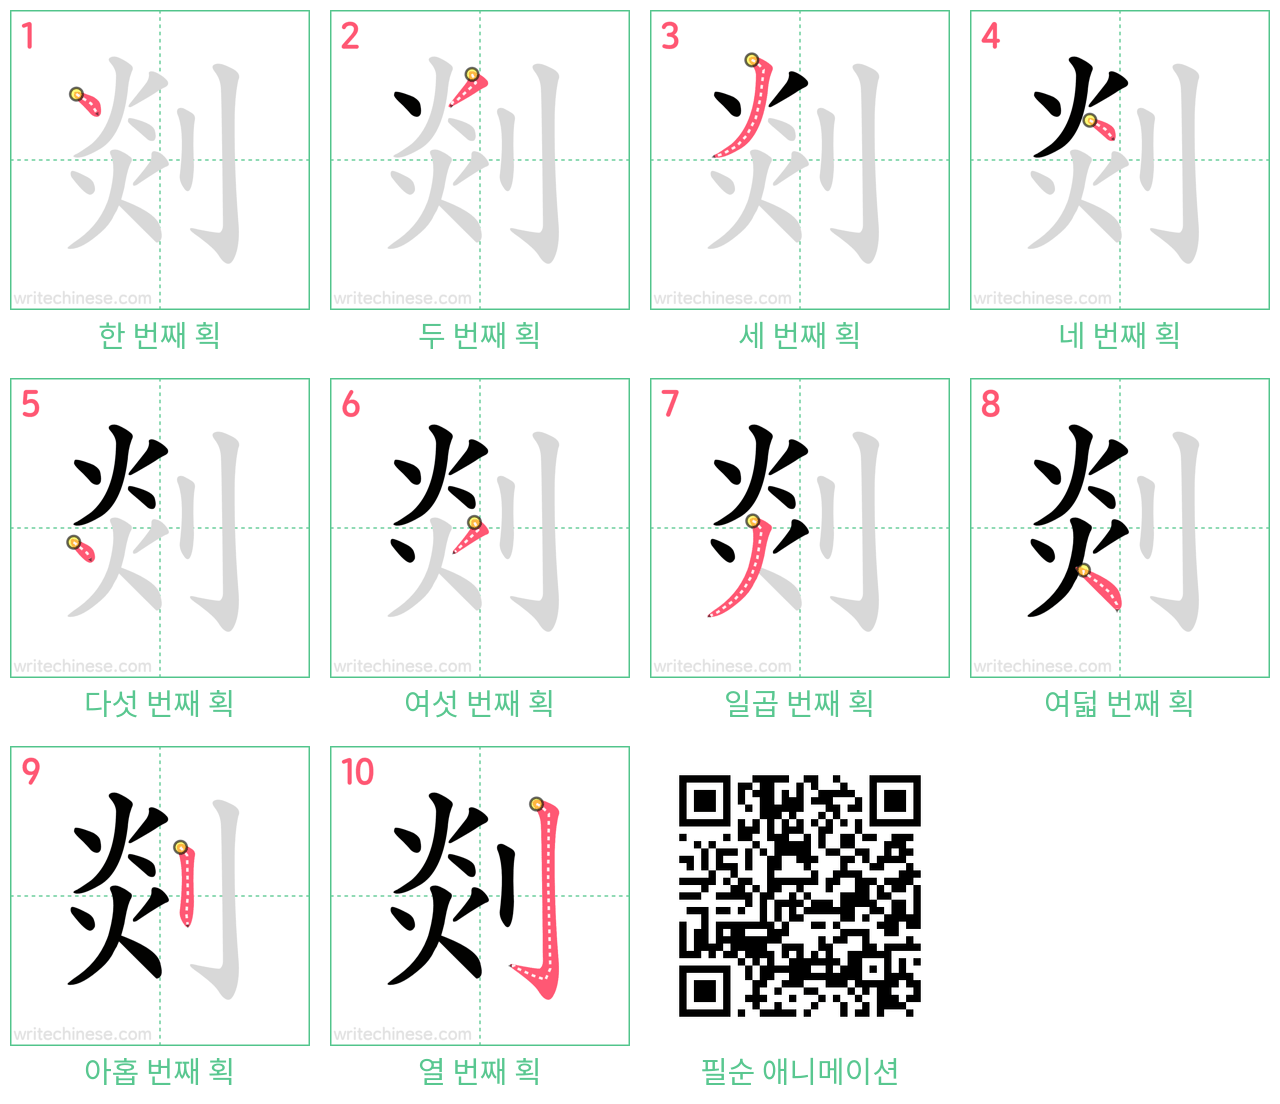 剡 step-by-step stroke order diagrams